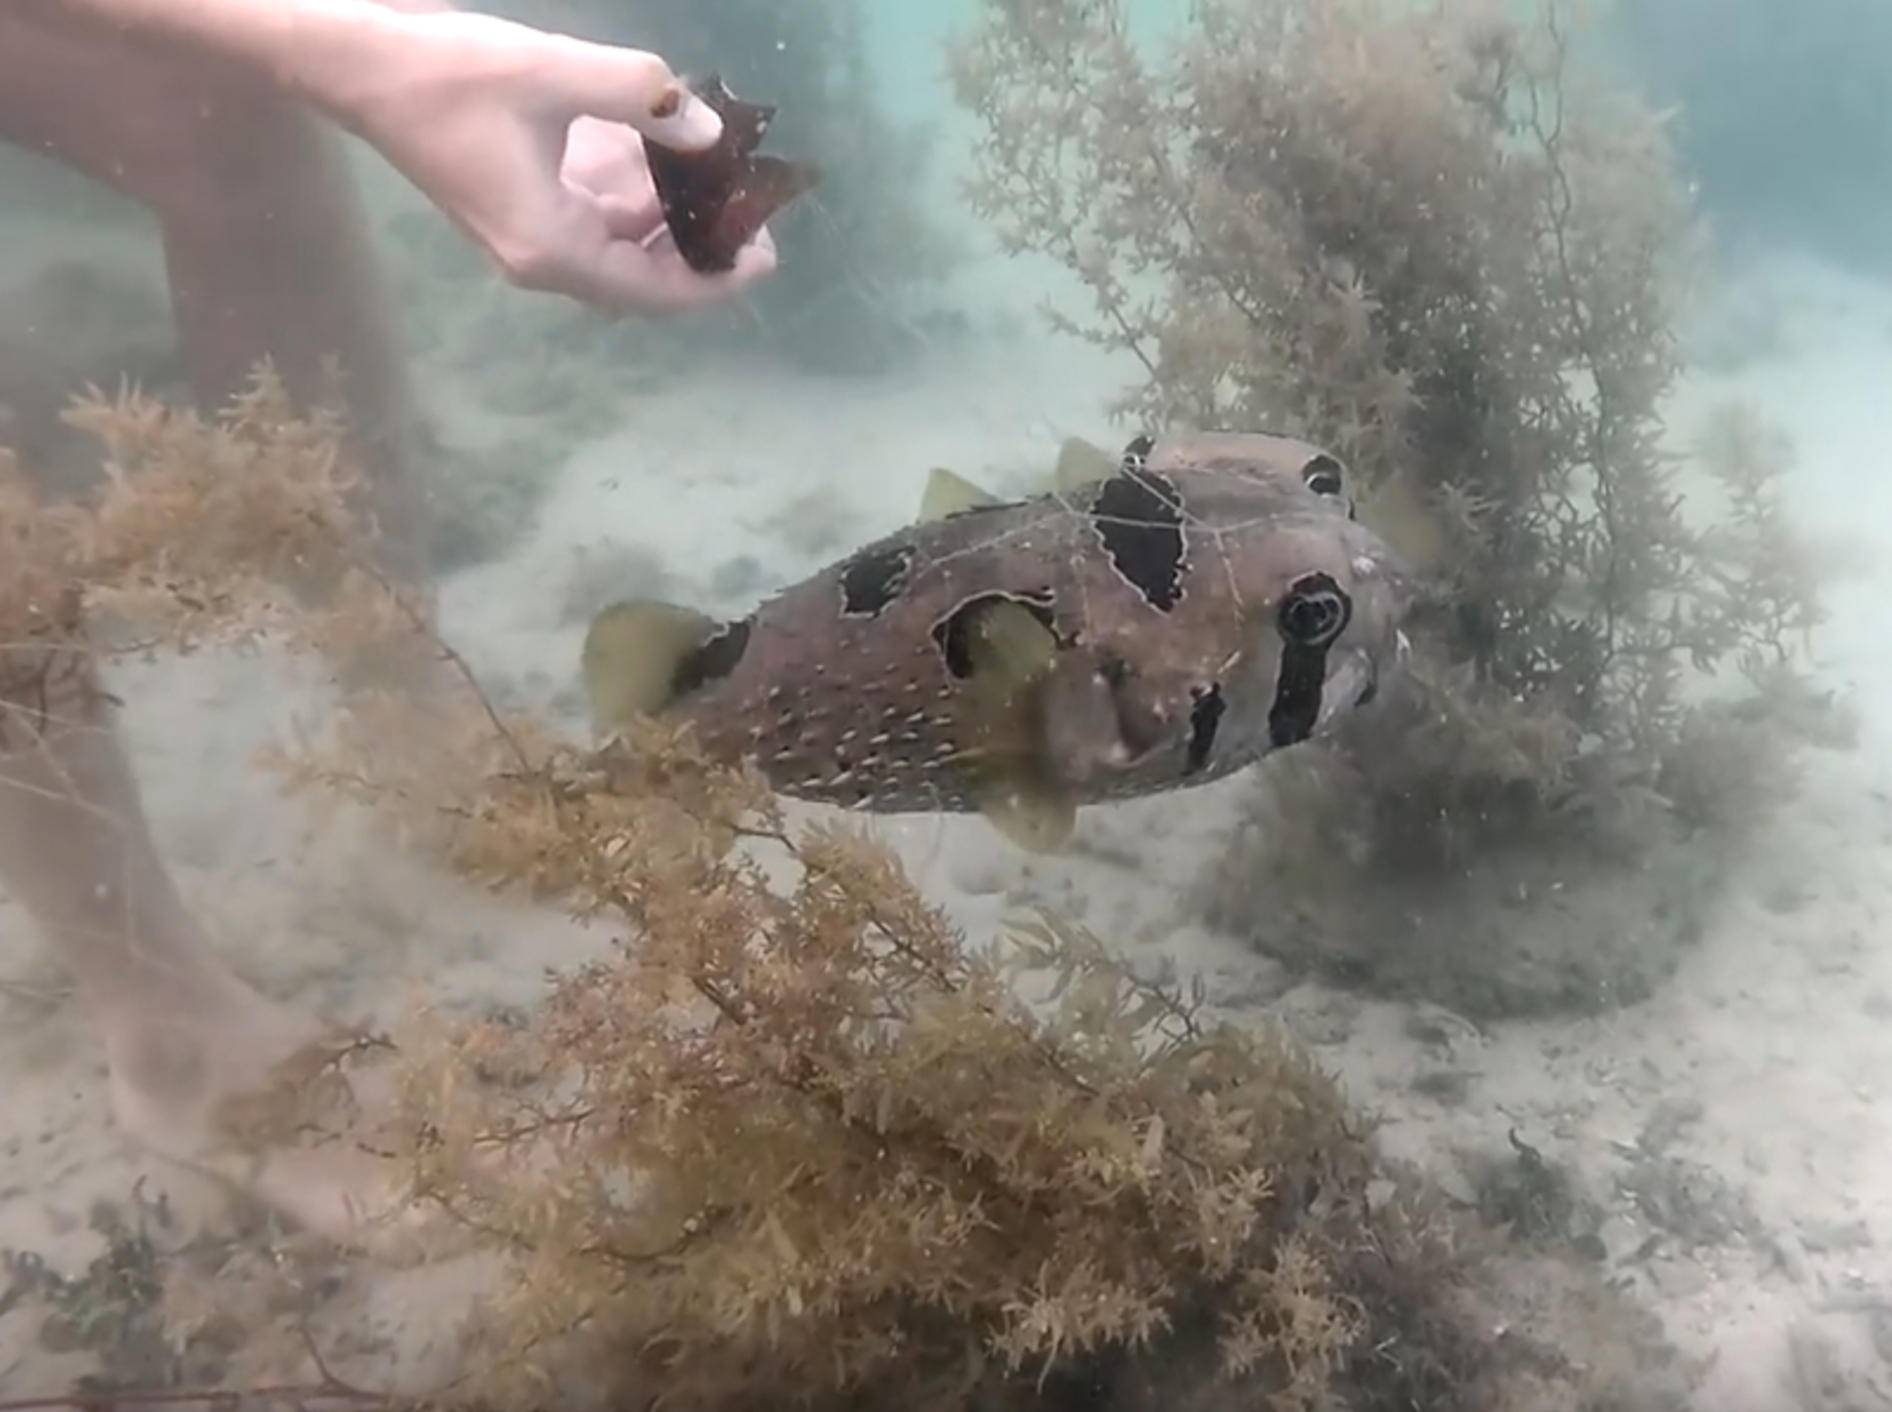 Taucher befreien Igelfisch aus Netz – YouTube / core sea